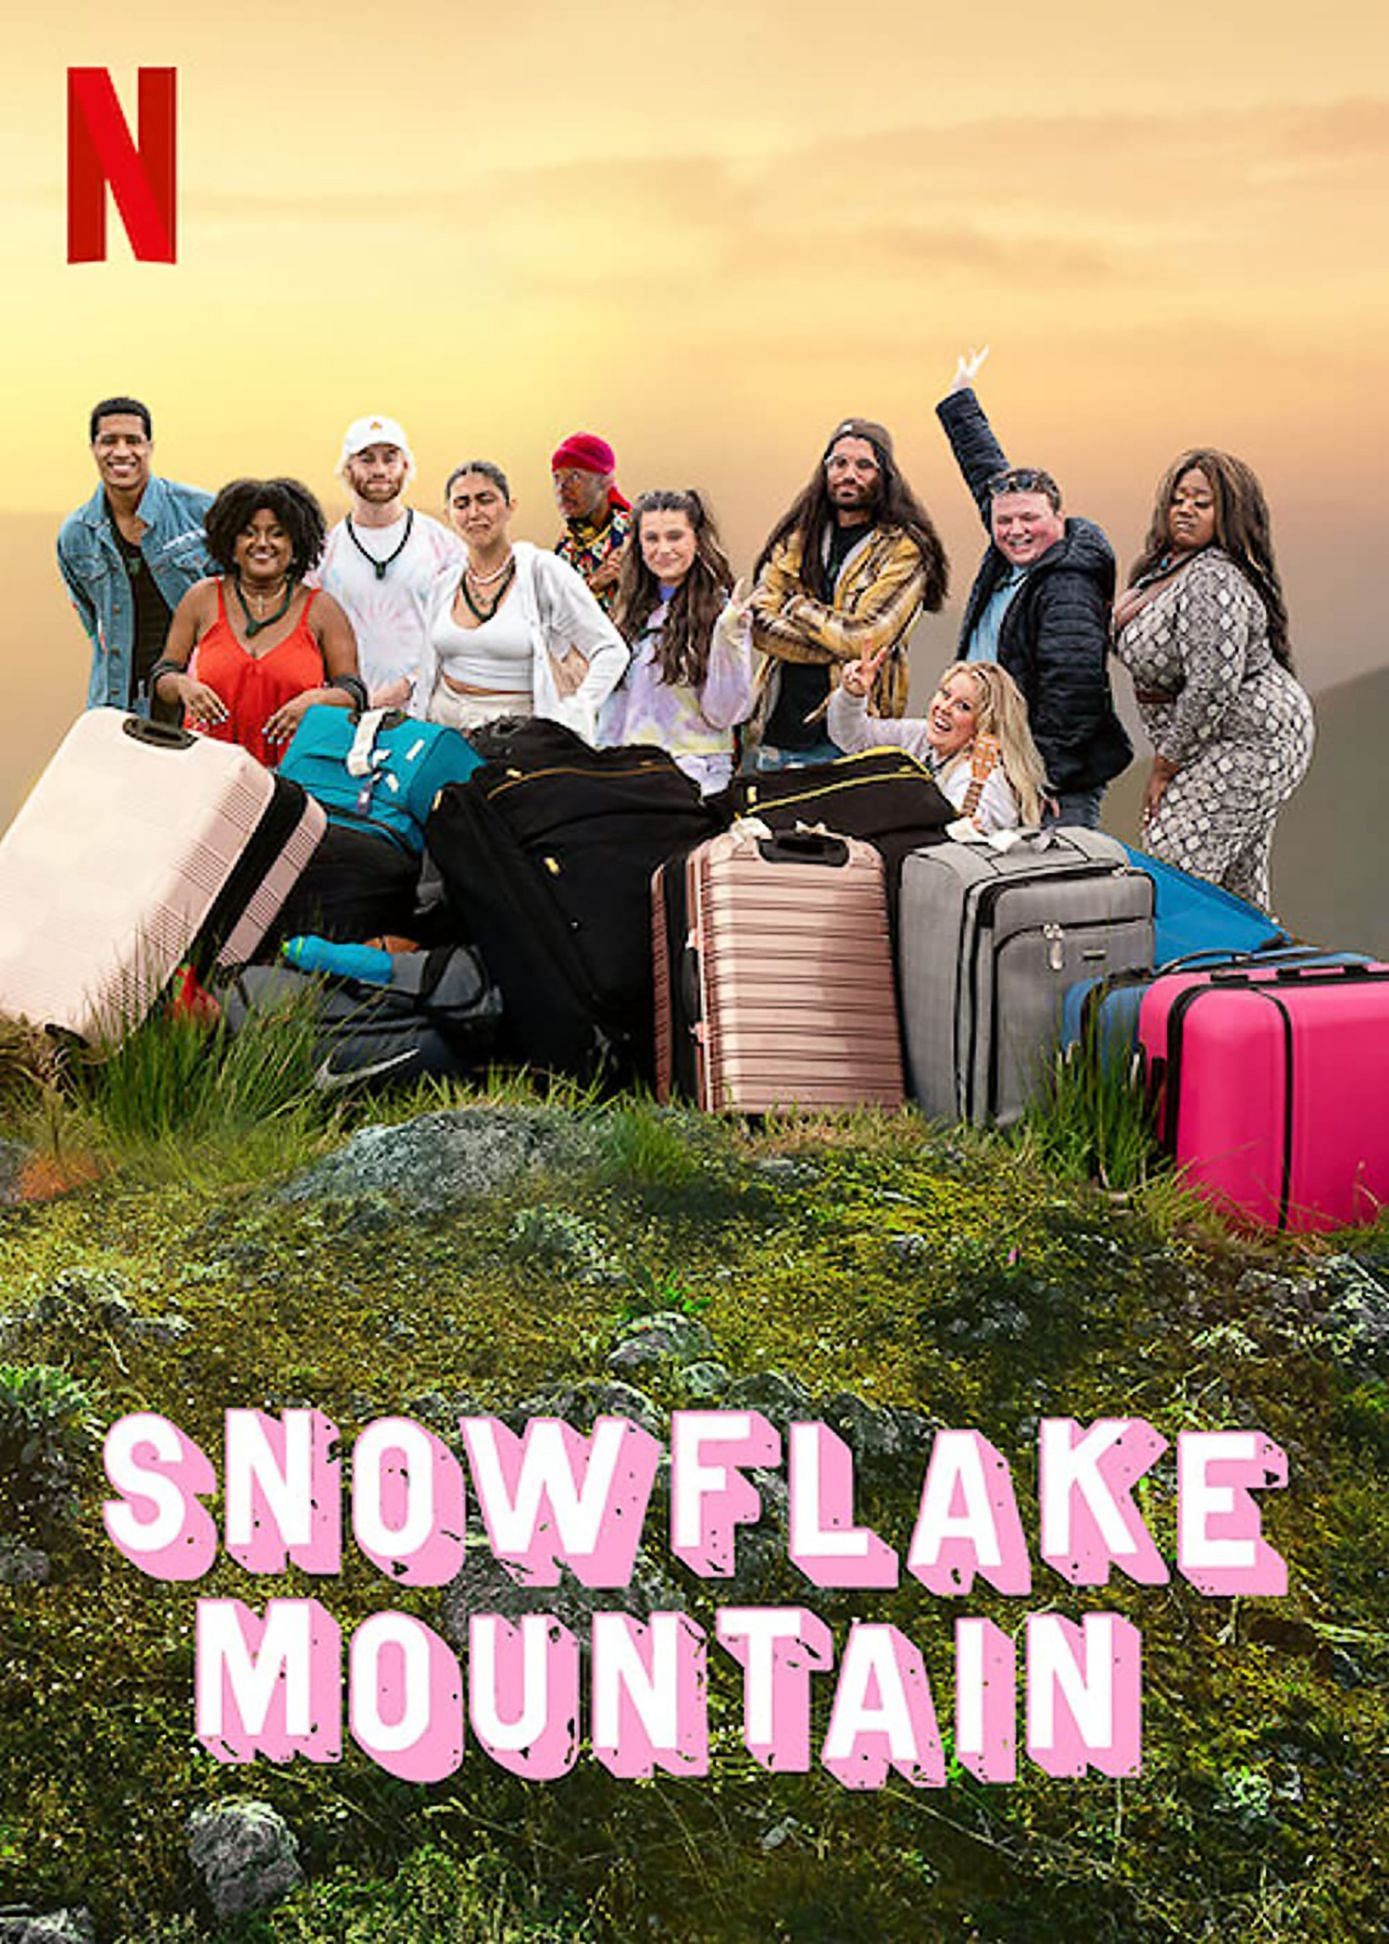 Snowflake Mountain (Image via Netflix)